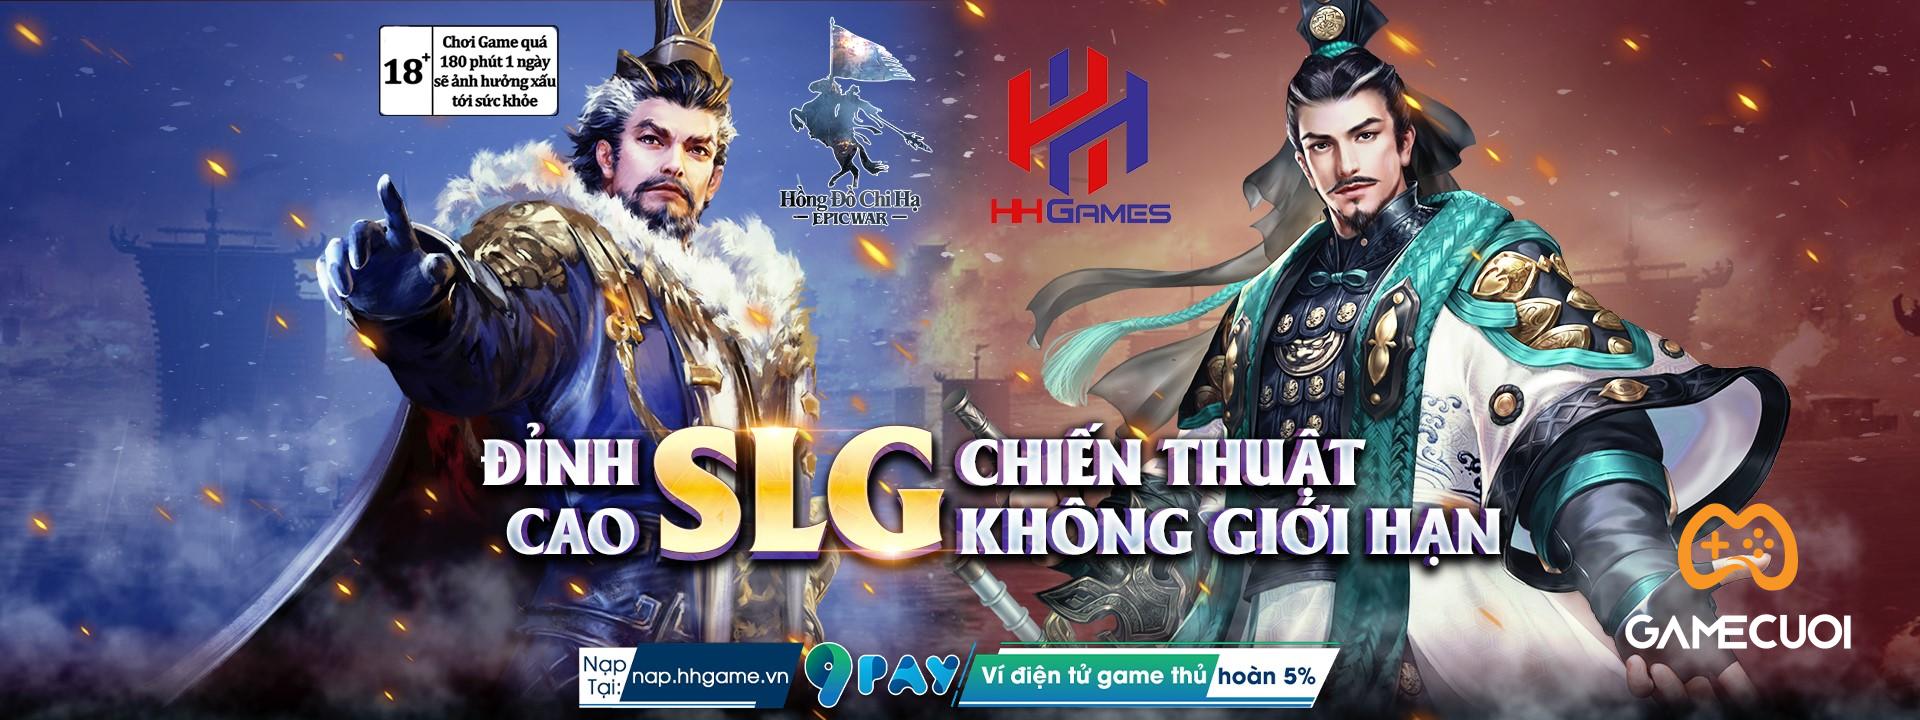 Hồng Đồ Chi Hạ: Server Việt Nam của siêu phẩm game SLG Epic War: Thrones bất ngờ xuất hiện